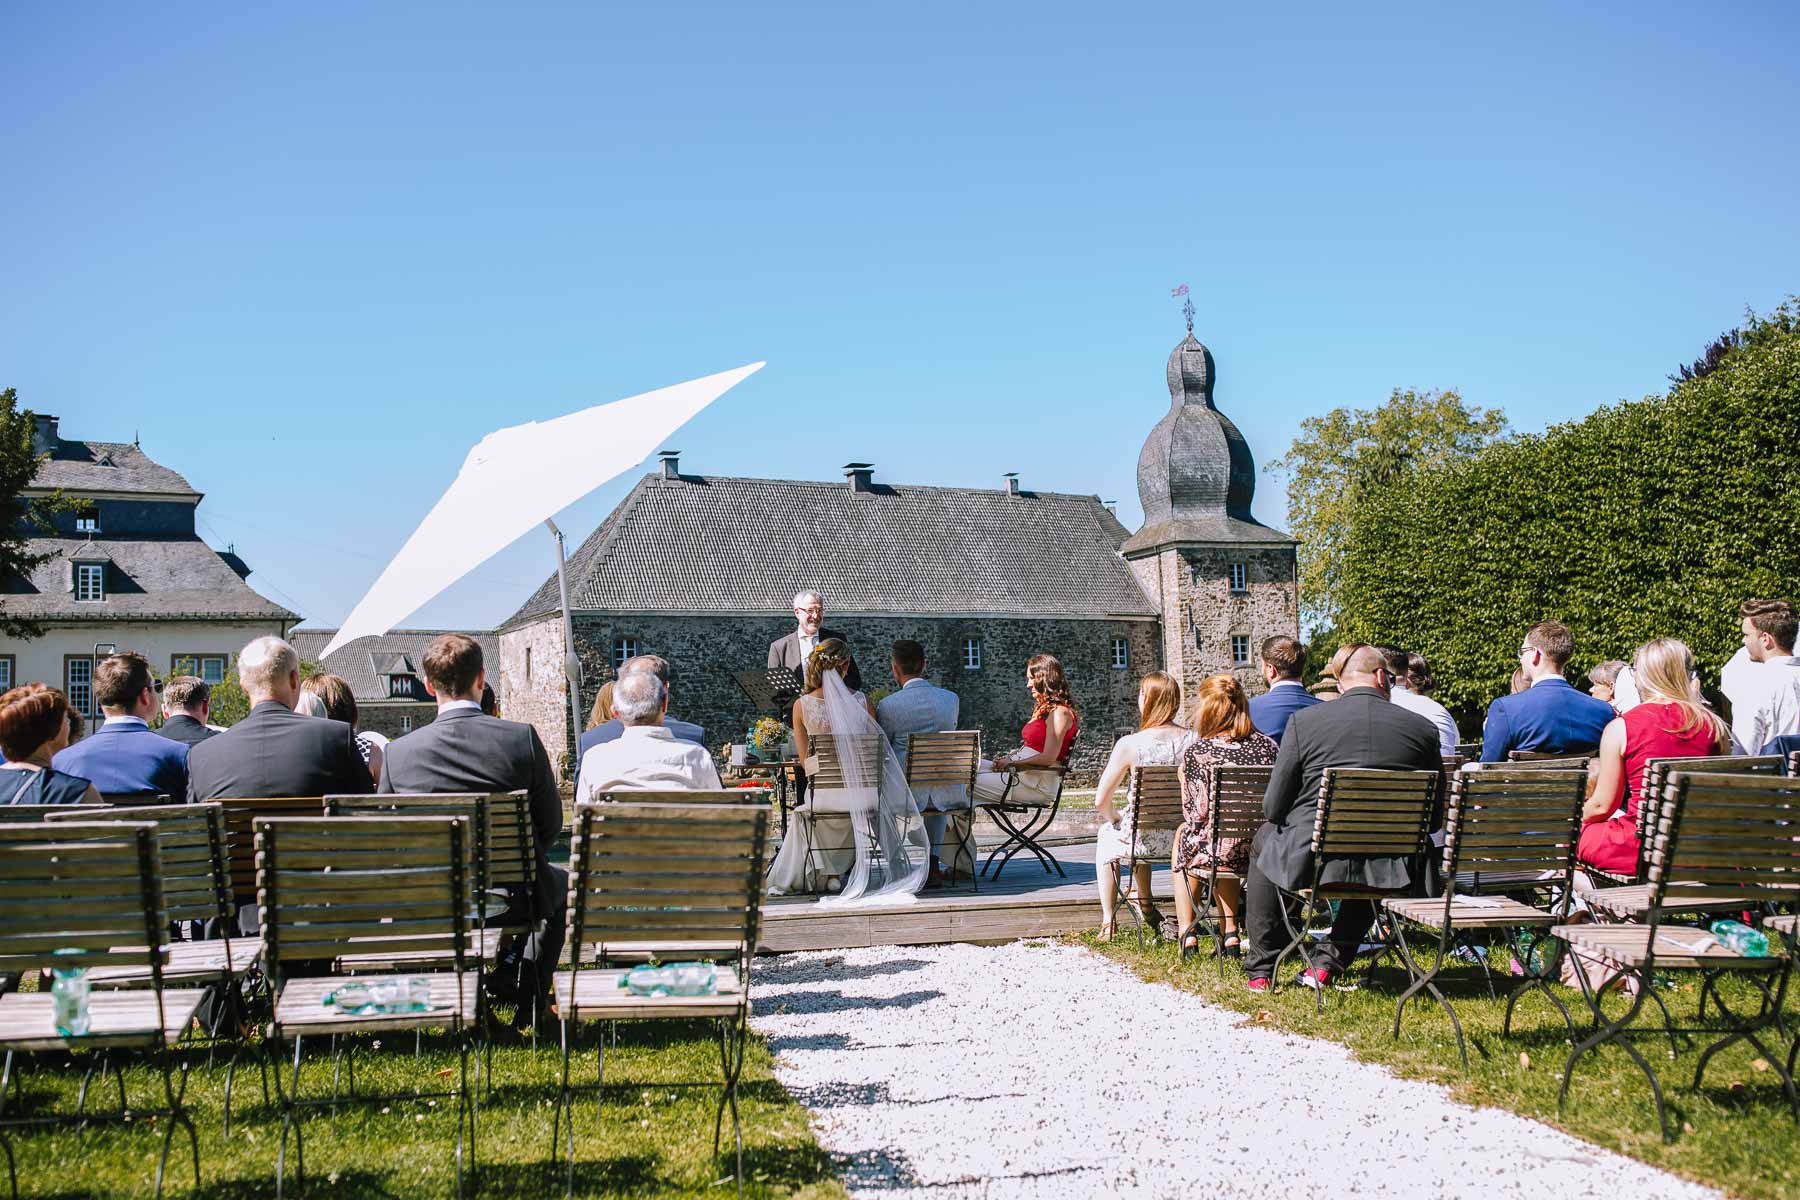 Hochzeitsfotografin sauerland hochzeitsfotograf ruhrgebiet schloss ehreshoven schlosshochzeit koeln hochzeit ruhrgebiet hochzeitsmesse nrw 159